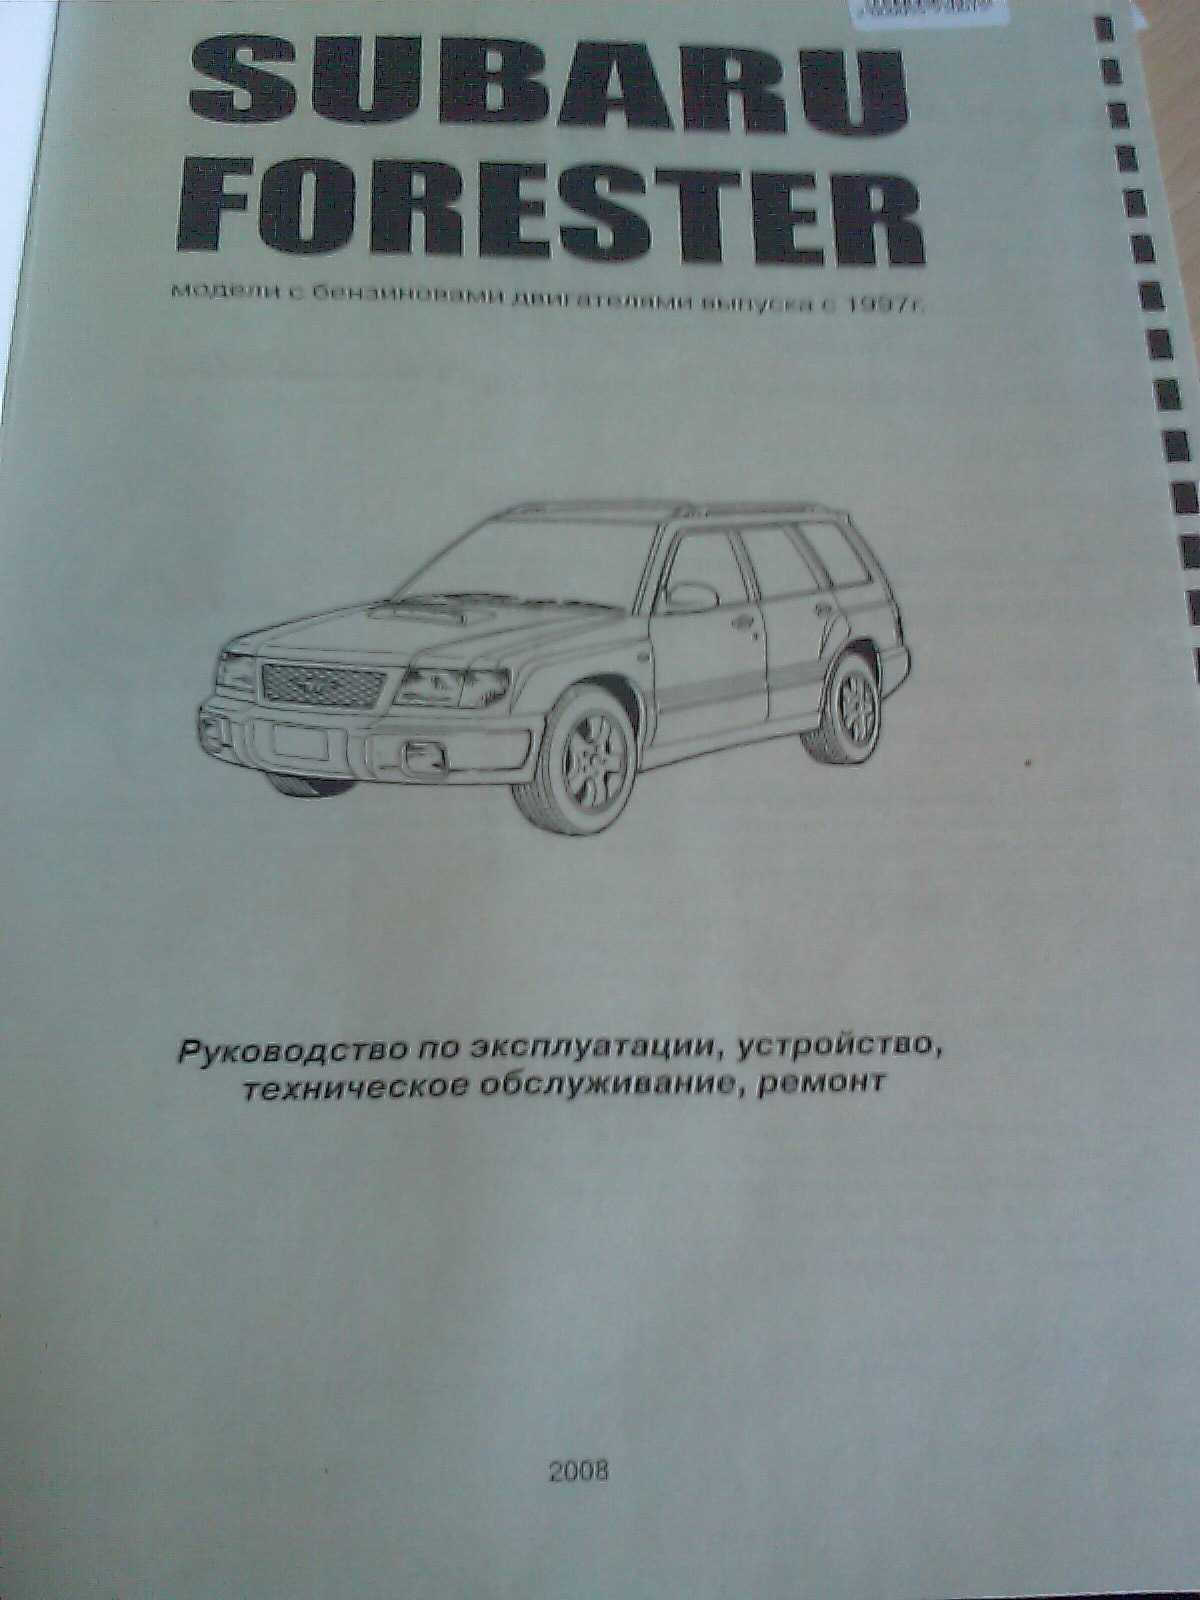 Subaru forester 2022 в россии: общий обзор, характеристики, комплектации, преимущества и недостатки